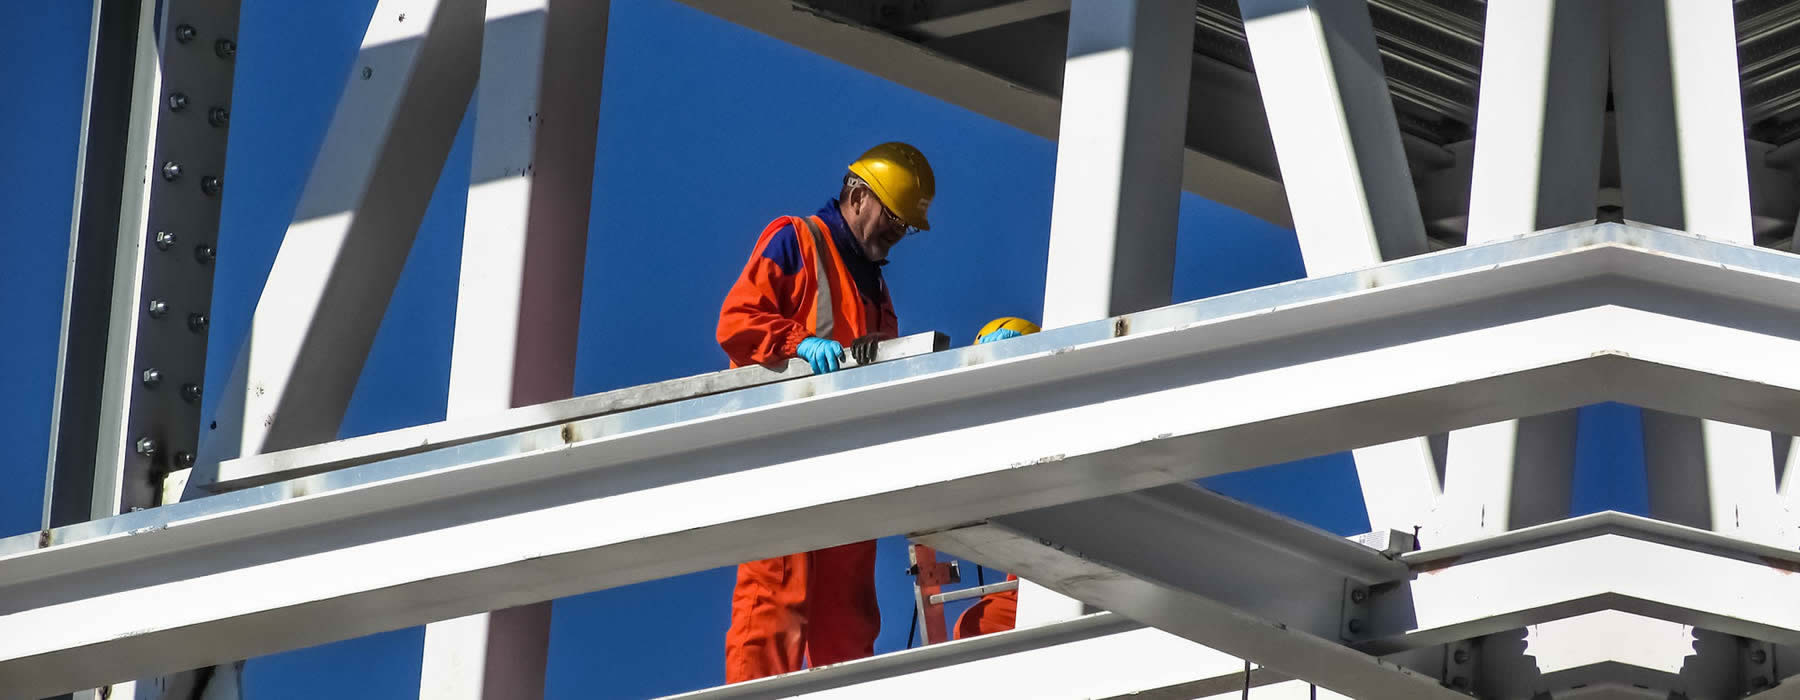 trabajador con su equipo de seguridad laborando en una estructura metalica en un trabajo de riesgo asegurado por seguro sctr